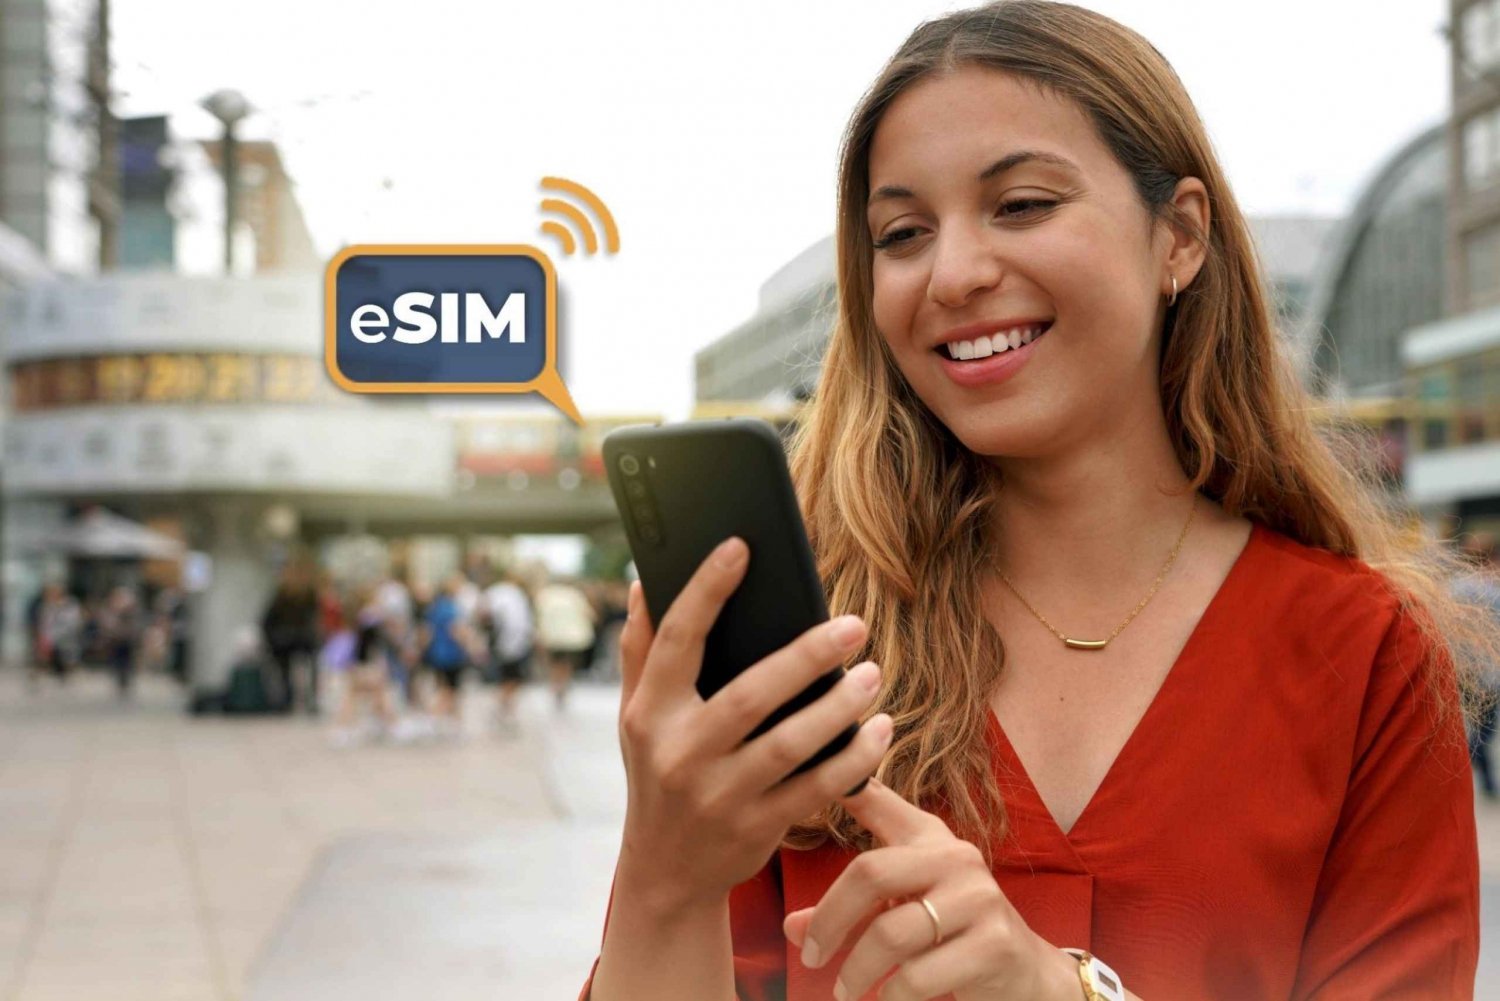 Berlino&Germania: Internet illimitato nell'UE con eSIM Mobile Data